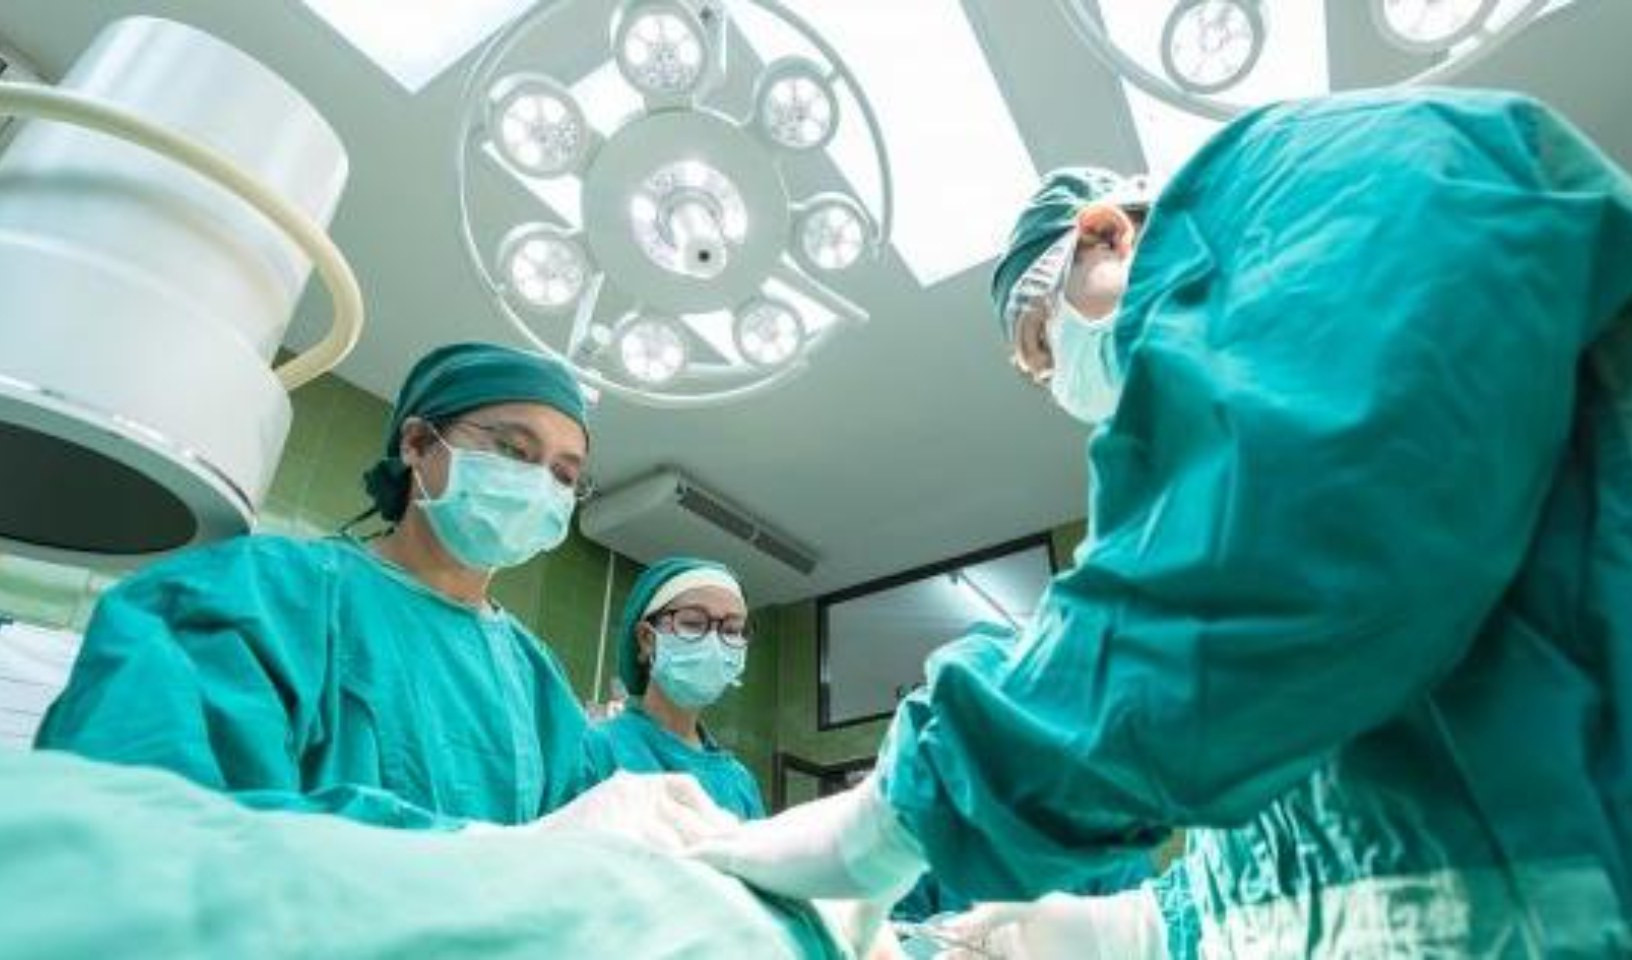 Infezioni ospedaliere chirurgiche, in Italia incidenza più bassa rispetto alla media europea